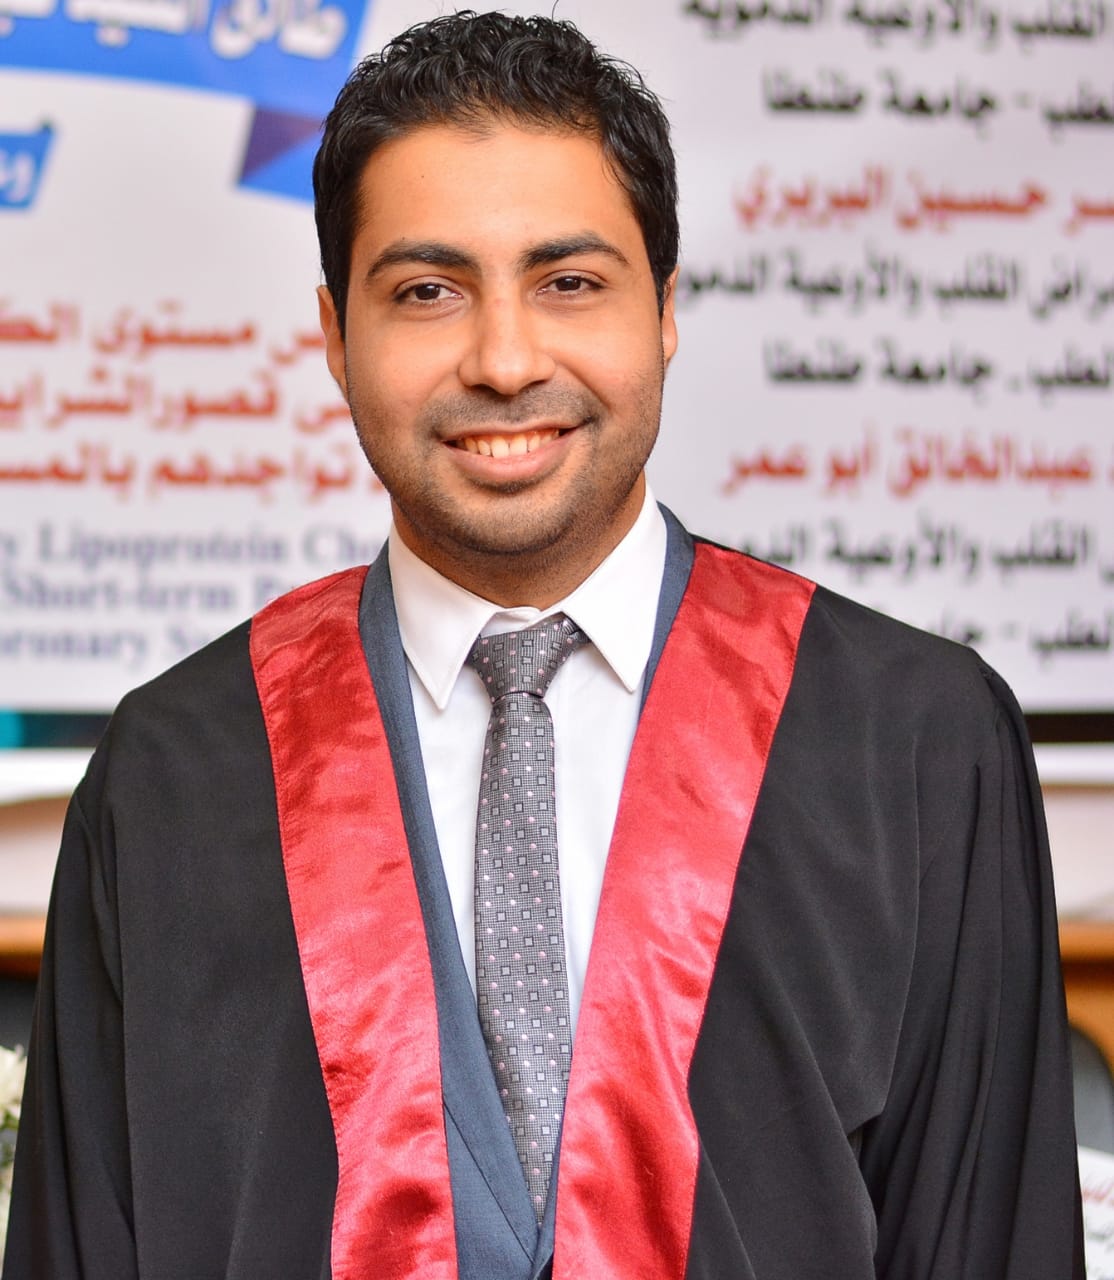 Dr. Tarek Elkholy